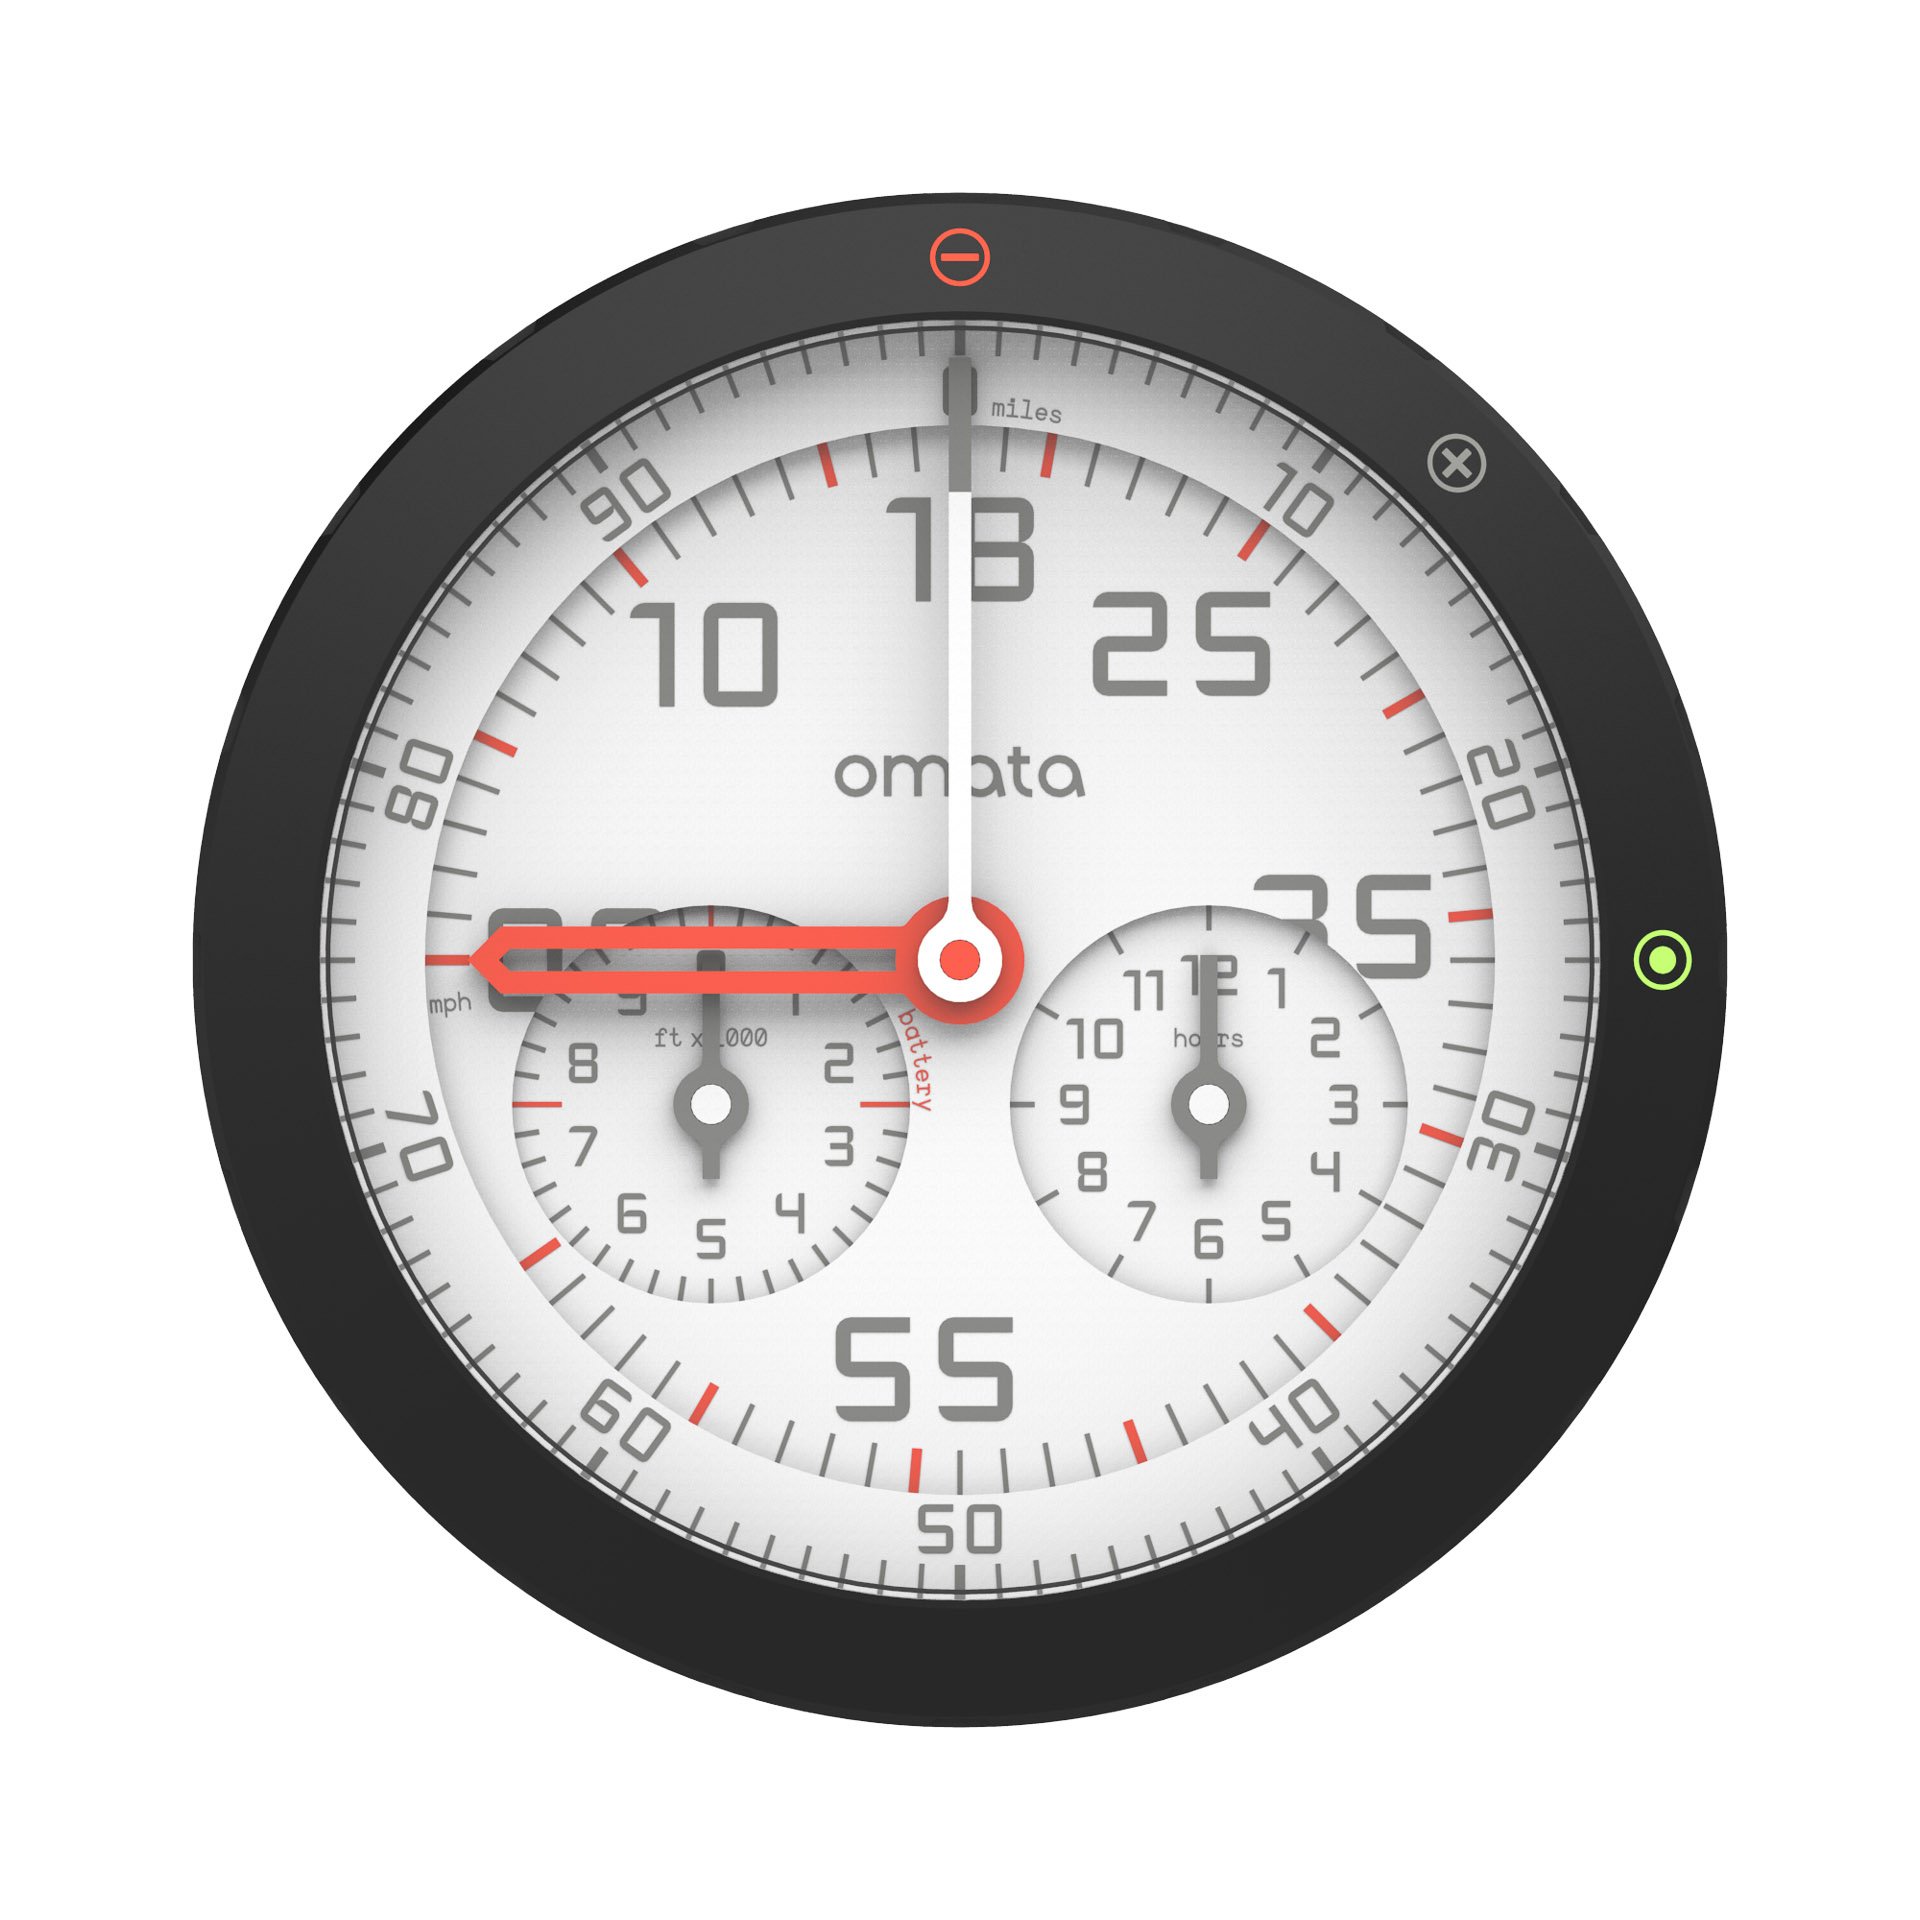 OMATA One Analog GPS Speedometer